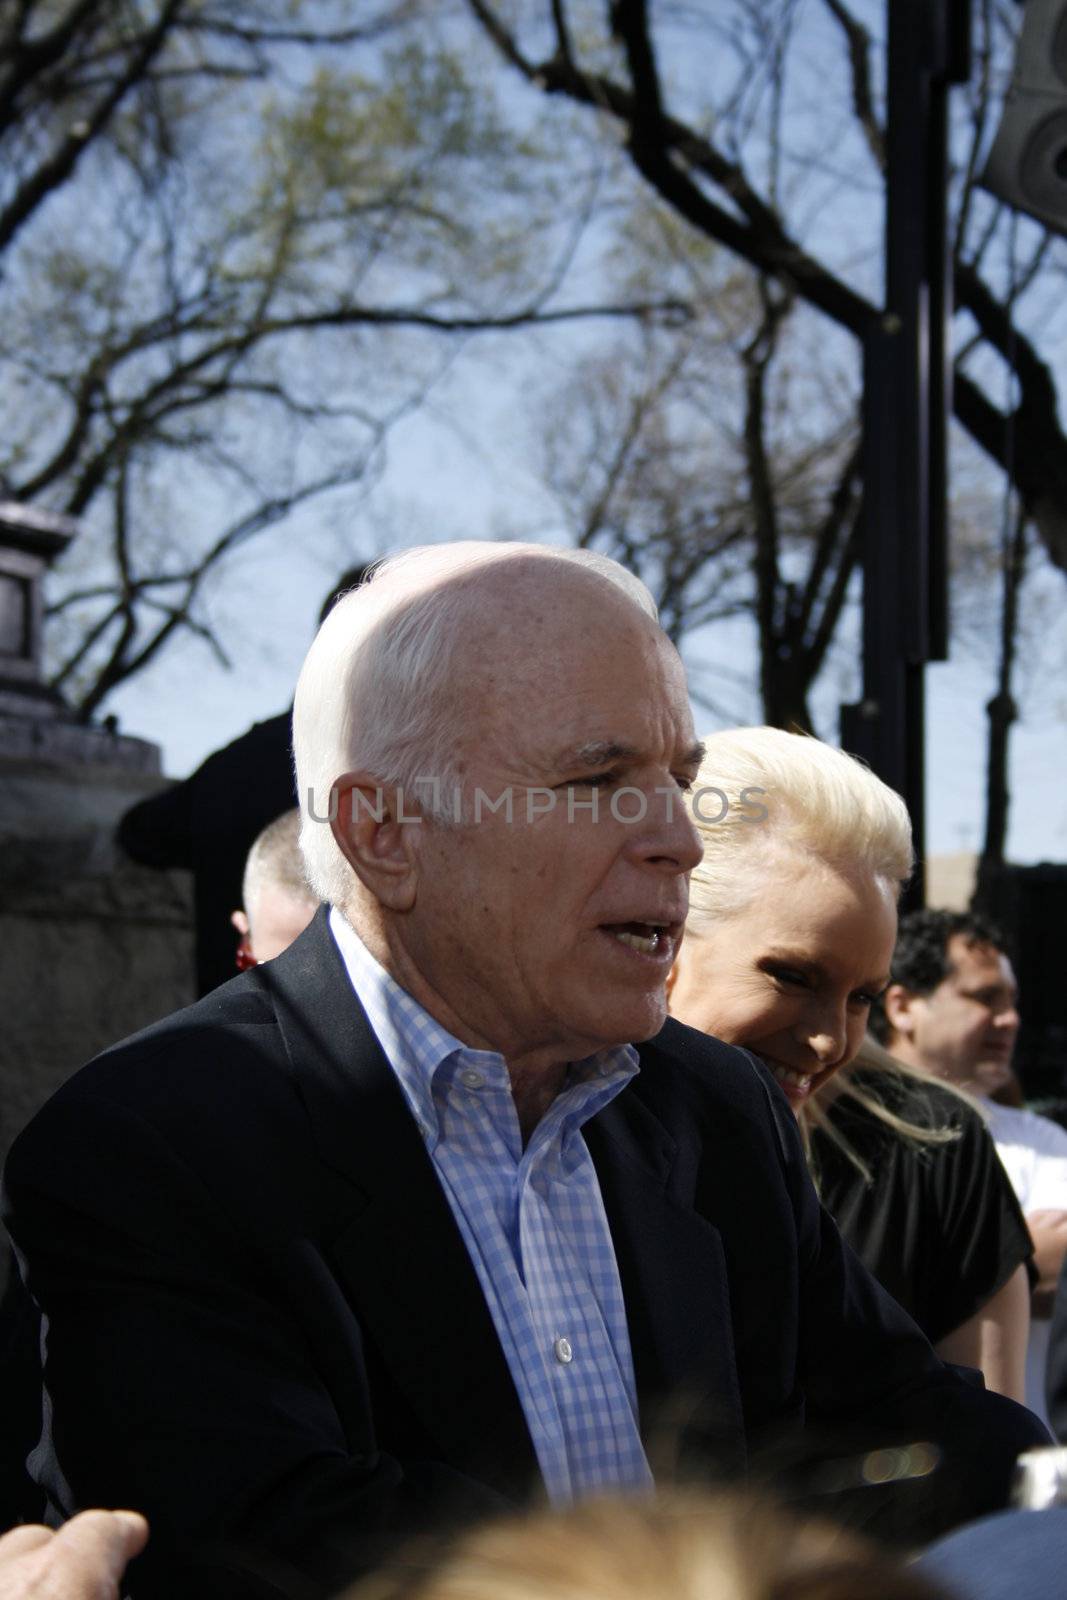 John McCain gives handshakes by JrnGeeraert